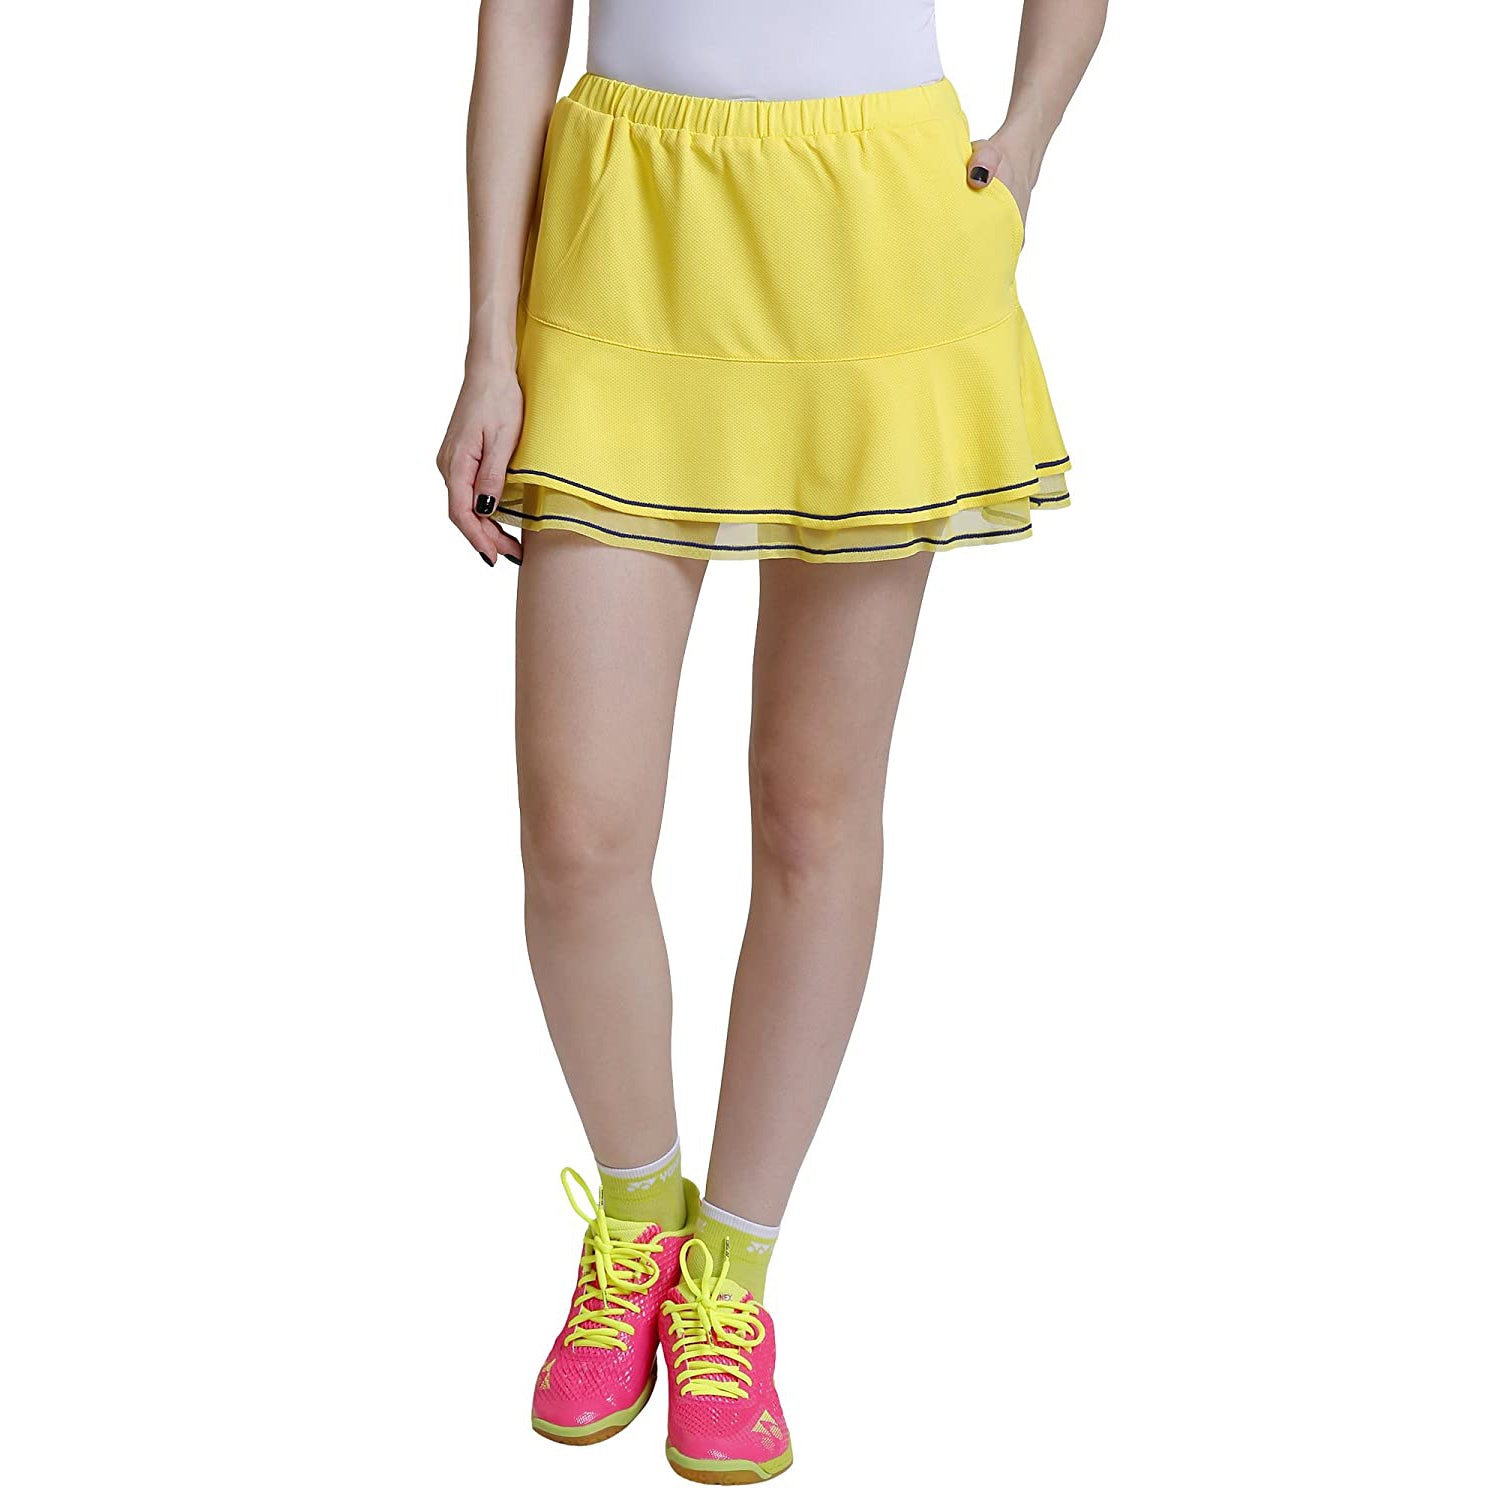 Yonex 26025 Skirt for Women, Gold Yellow - Best Price online Prokicksports.com